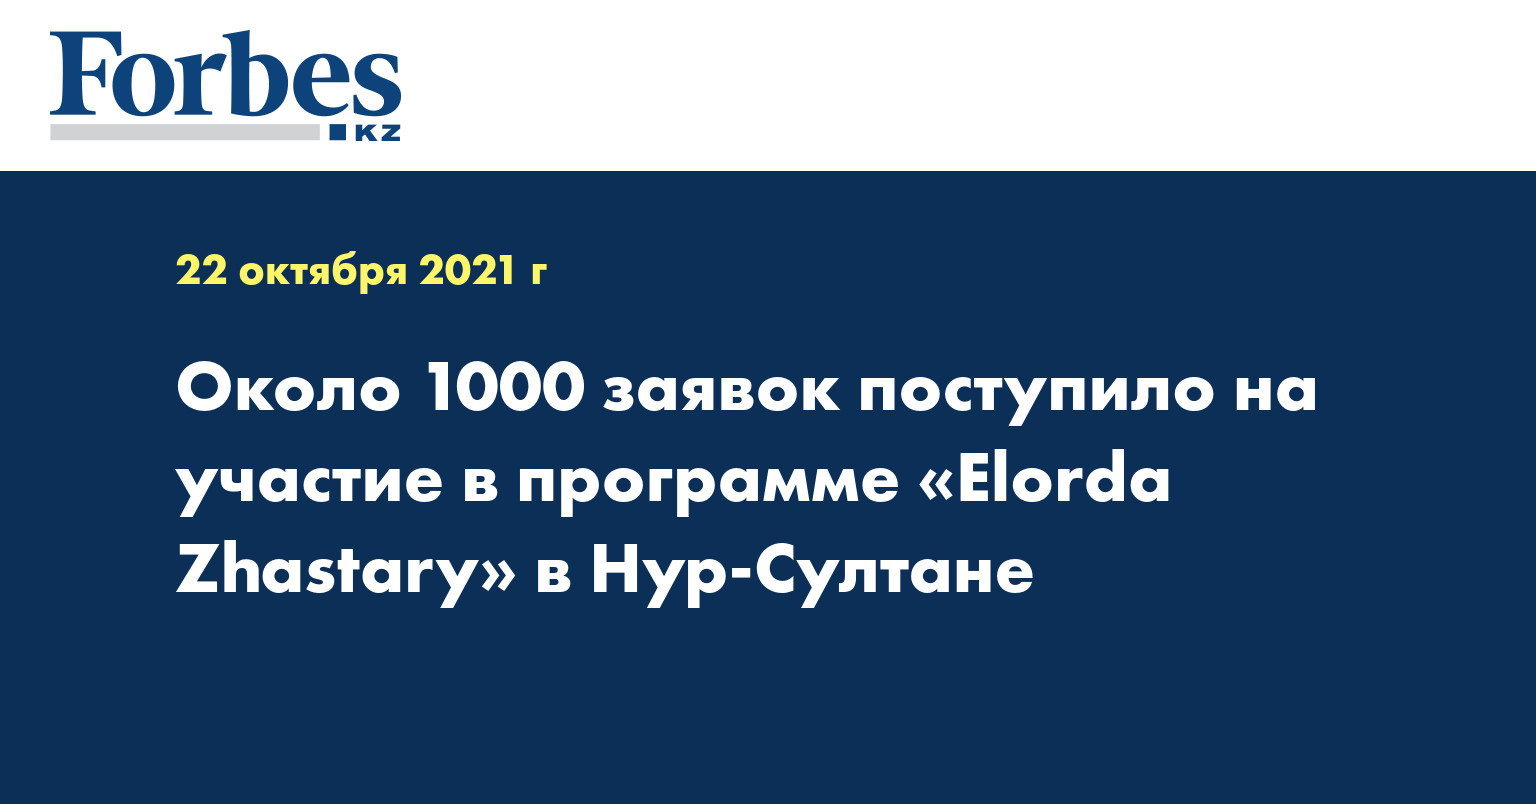 Около 1000 заявок поступило на участие в программе «Elorda Zhastary» в Нур-Султане